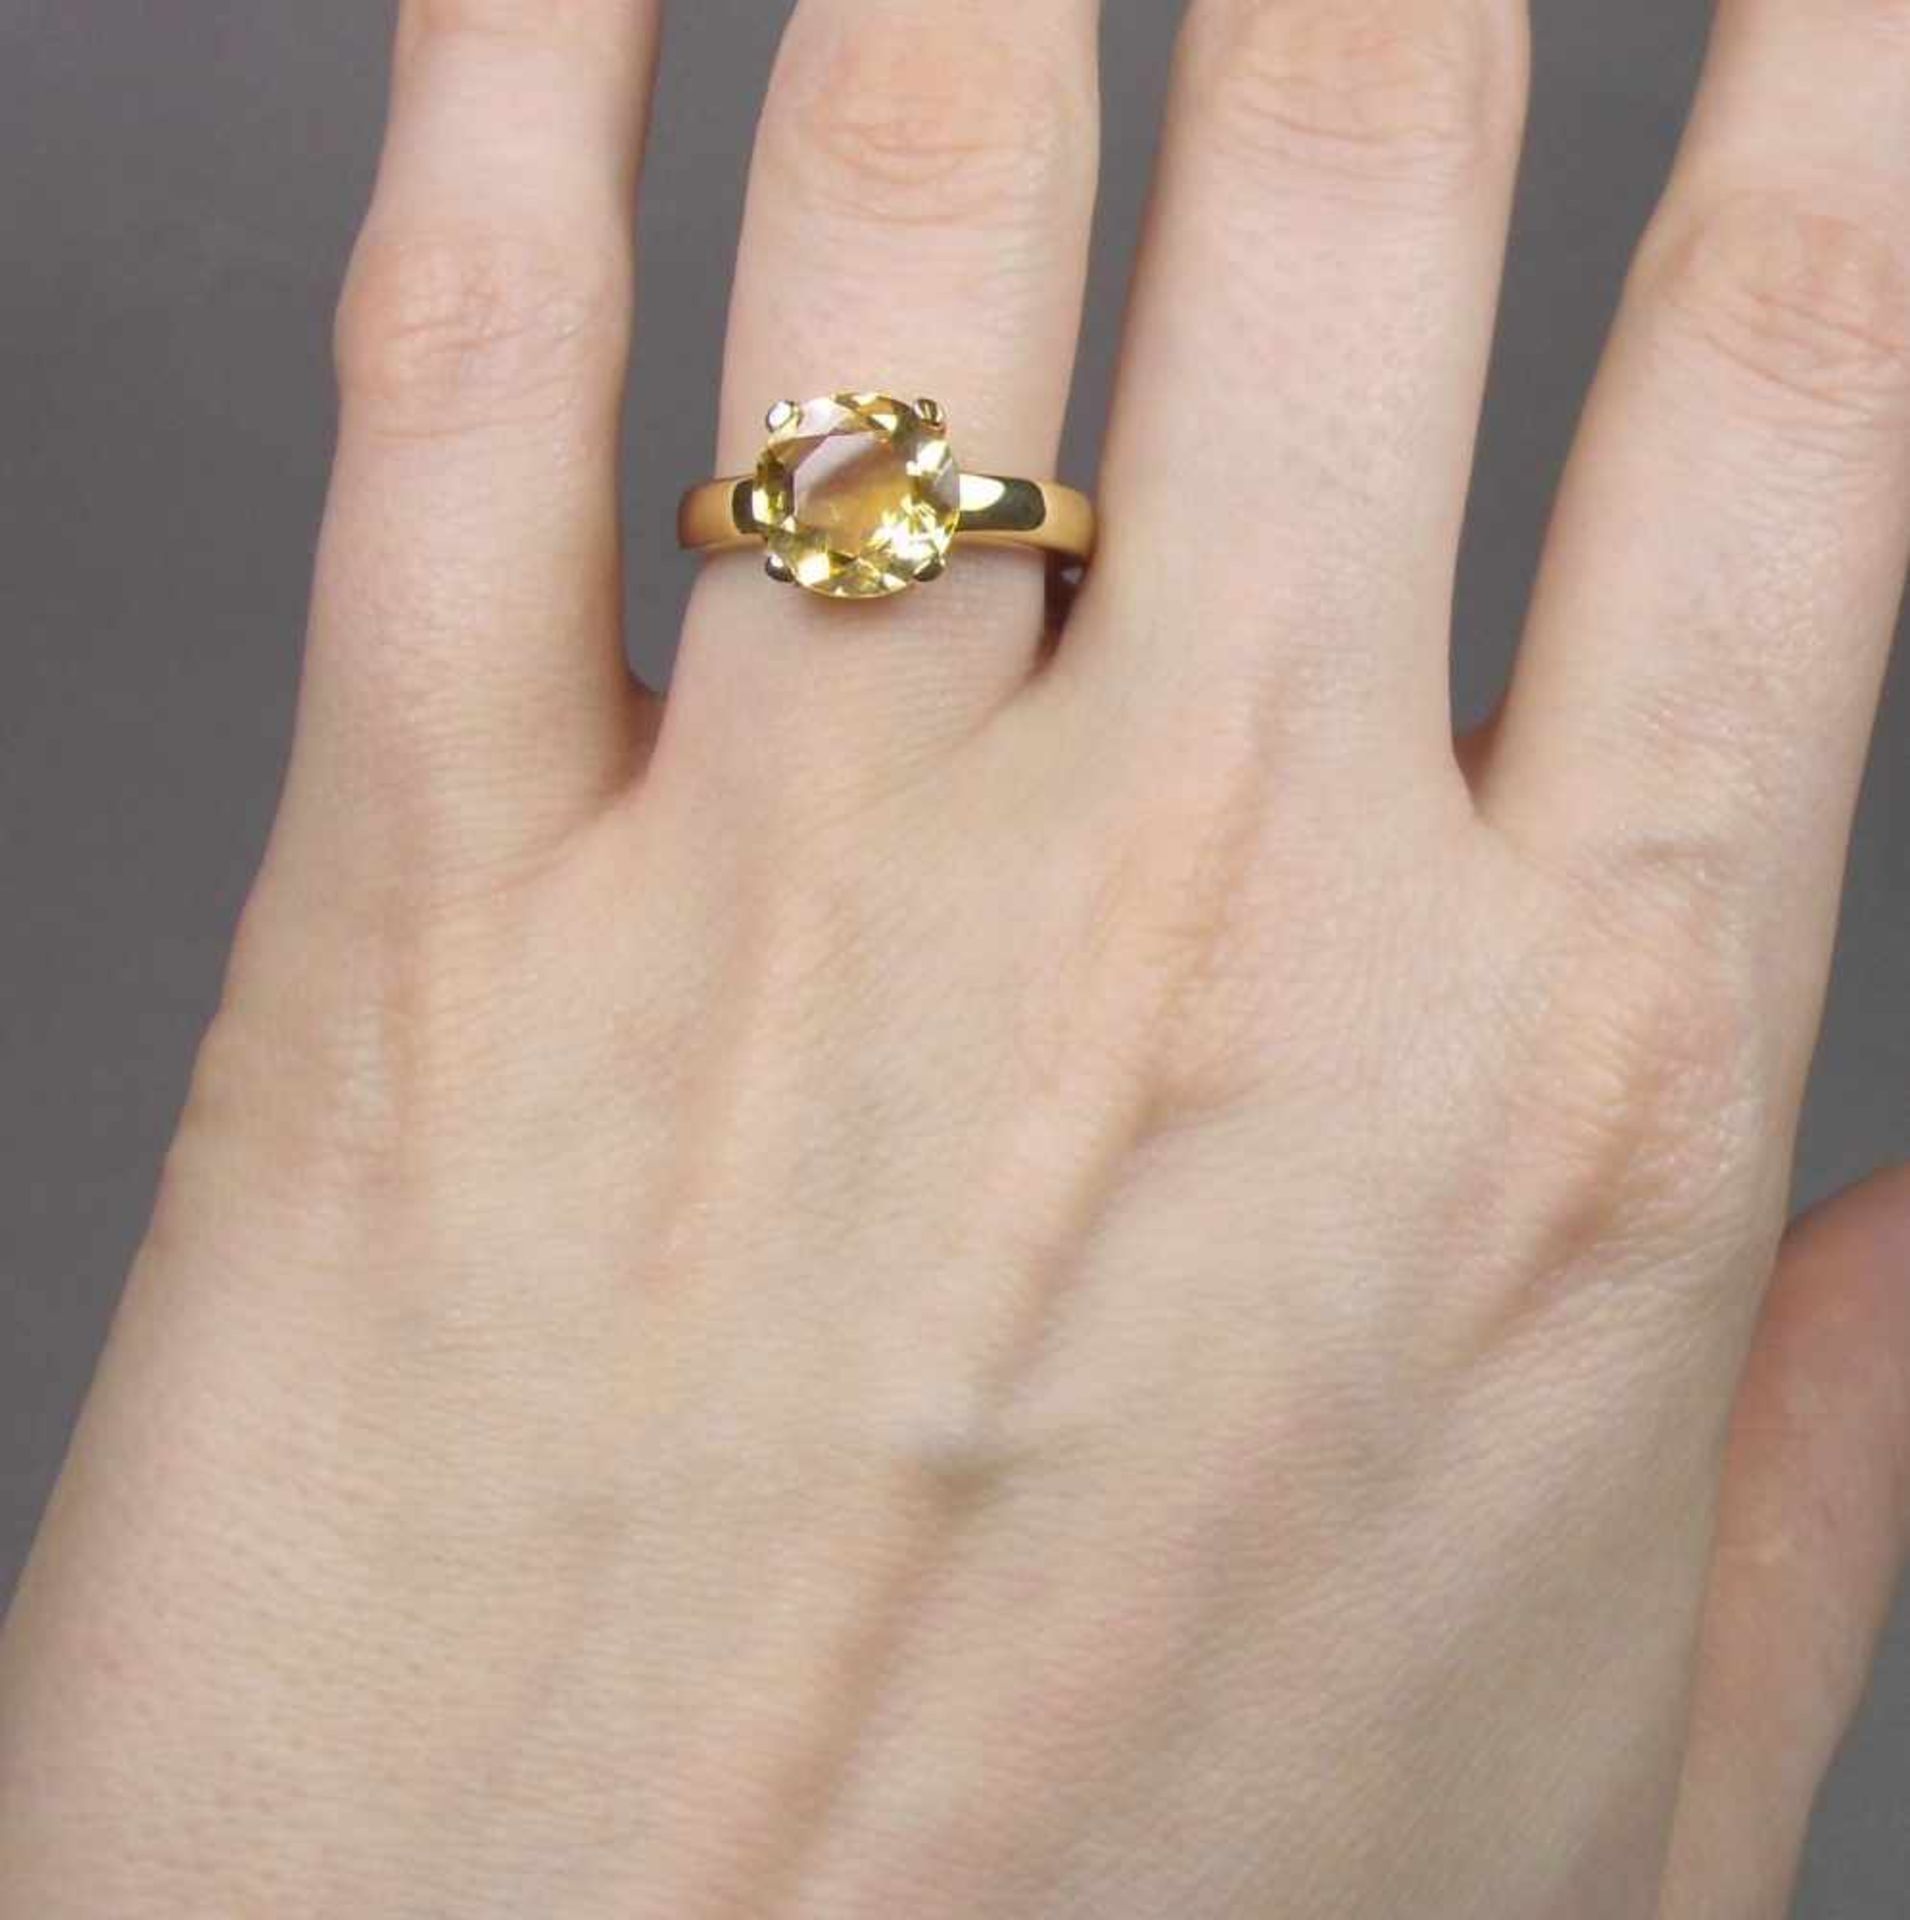 RING, 375er Gelbgold (3,8 g), besetzt mit einem Citrin. Ringkopfmaße: 1 x 1 cm, Ring-Gr. 57. - Bild 4 aus 4